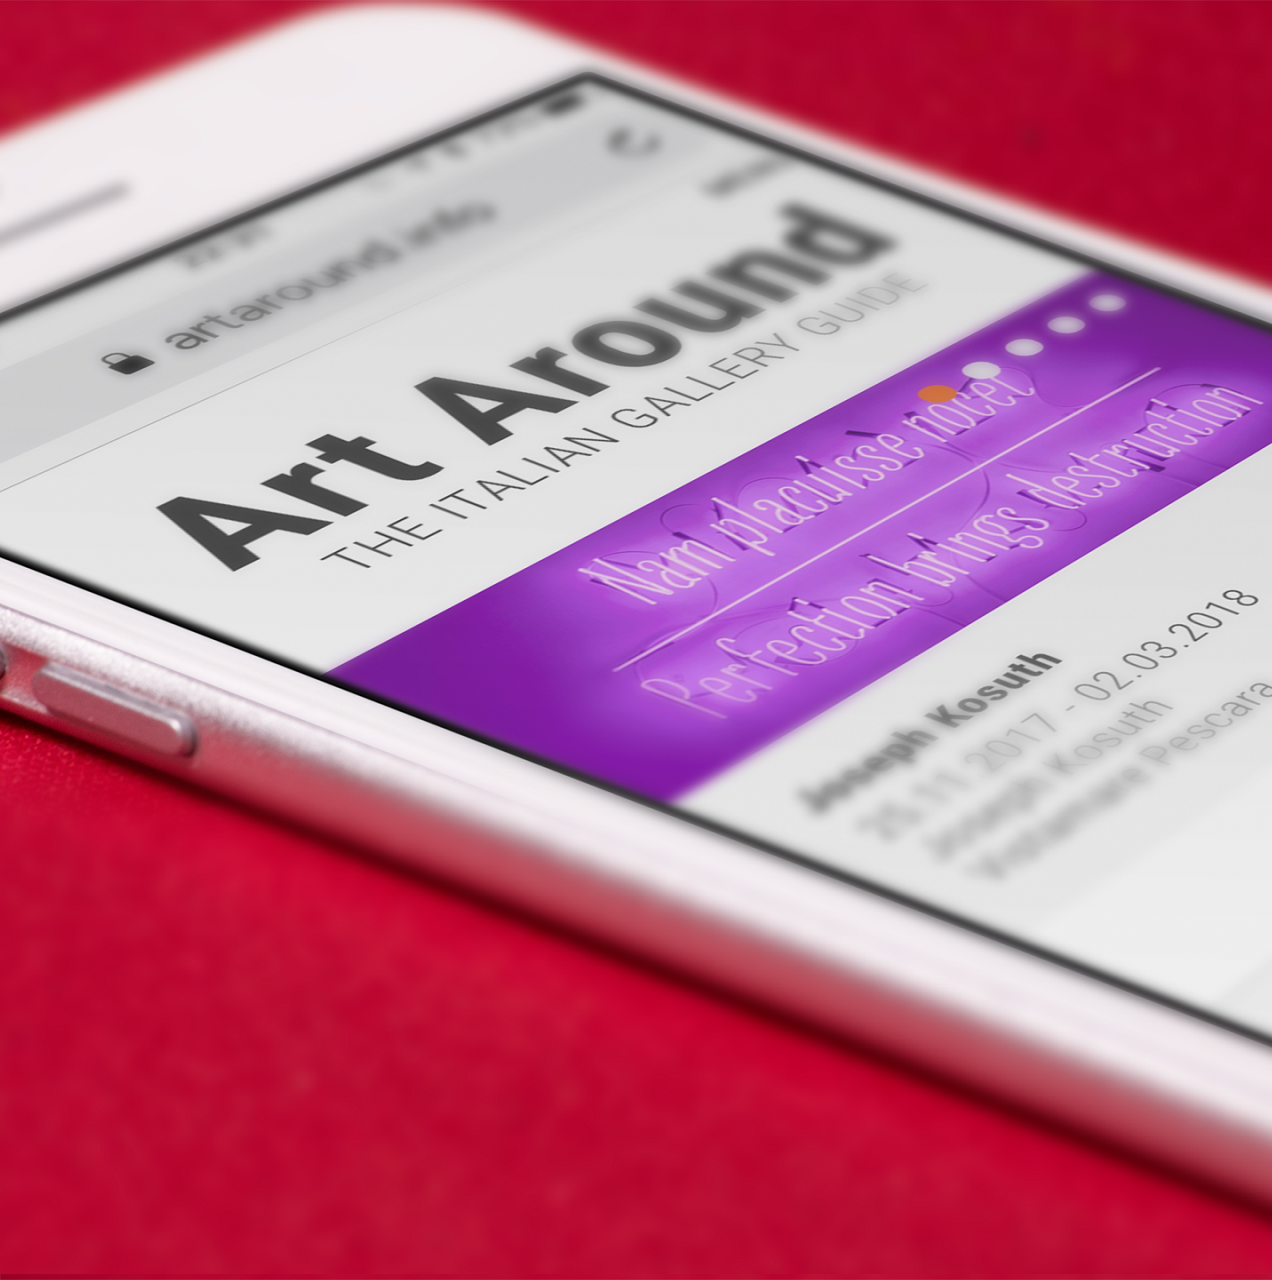 ArtAround.info, the first online platform dedicated to Italian galleries.